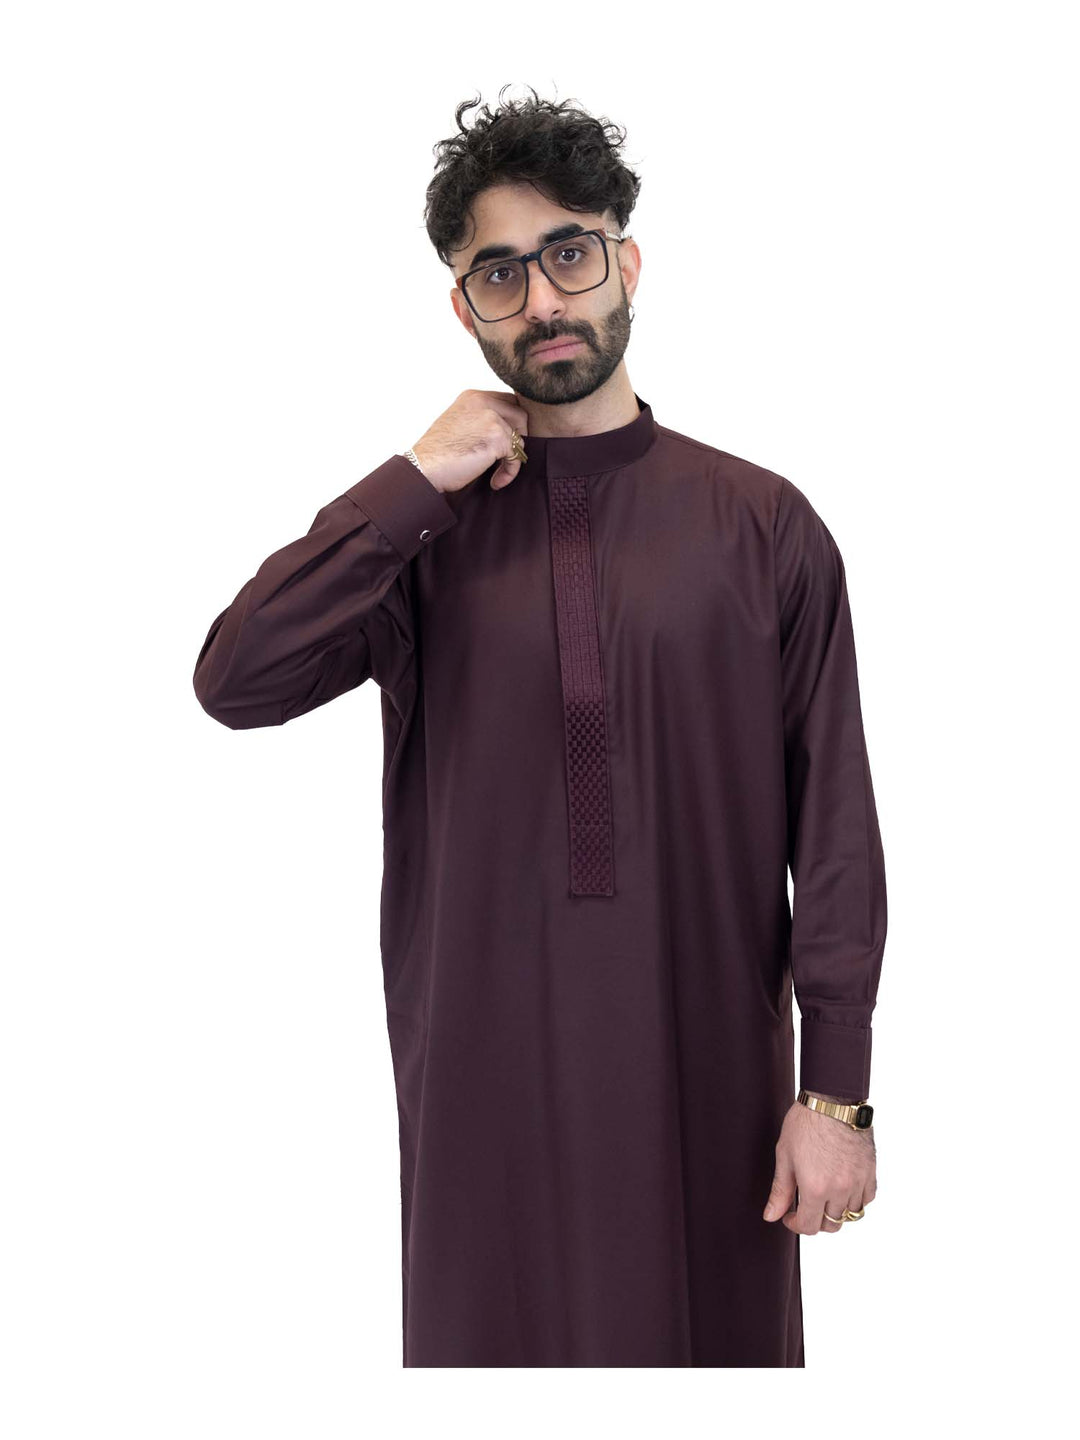 ثوب رجالي انطباعات إسلامية - فتحة كوفي مع أزرار أكمام